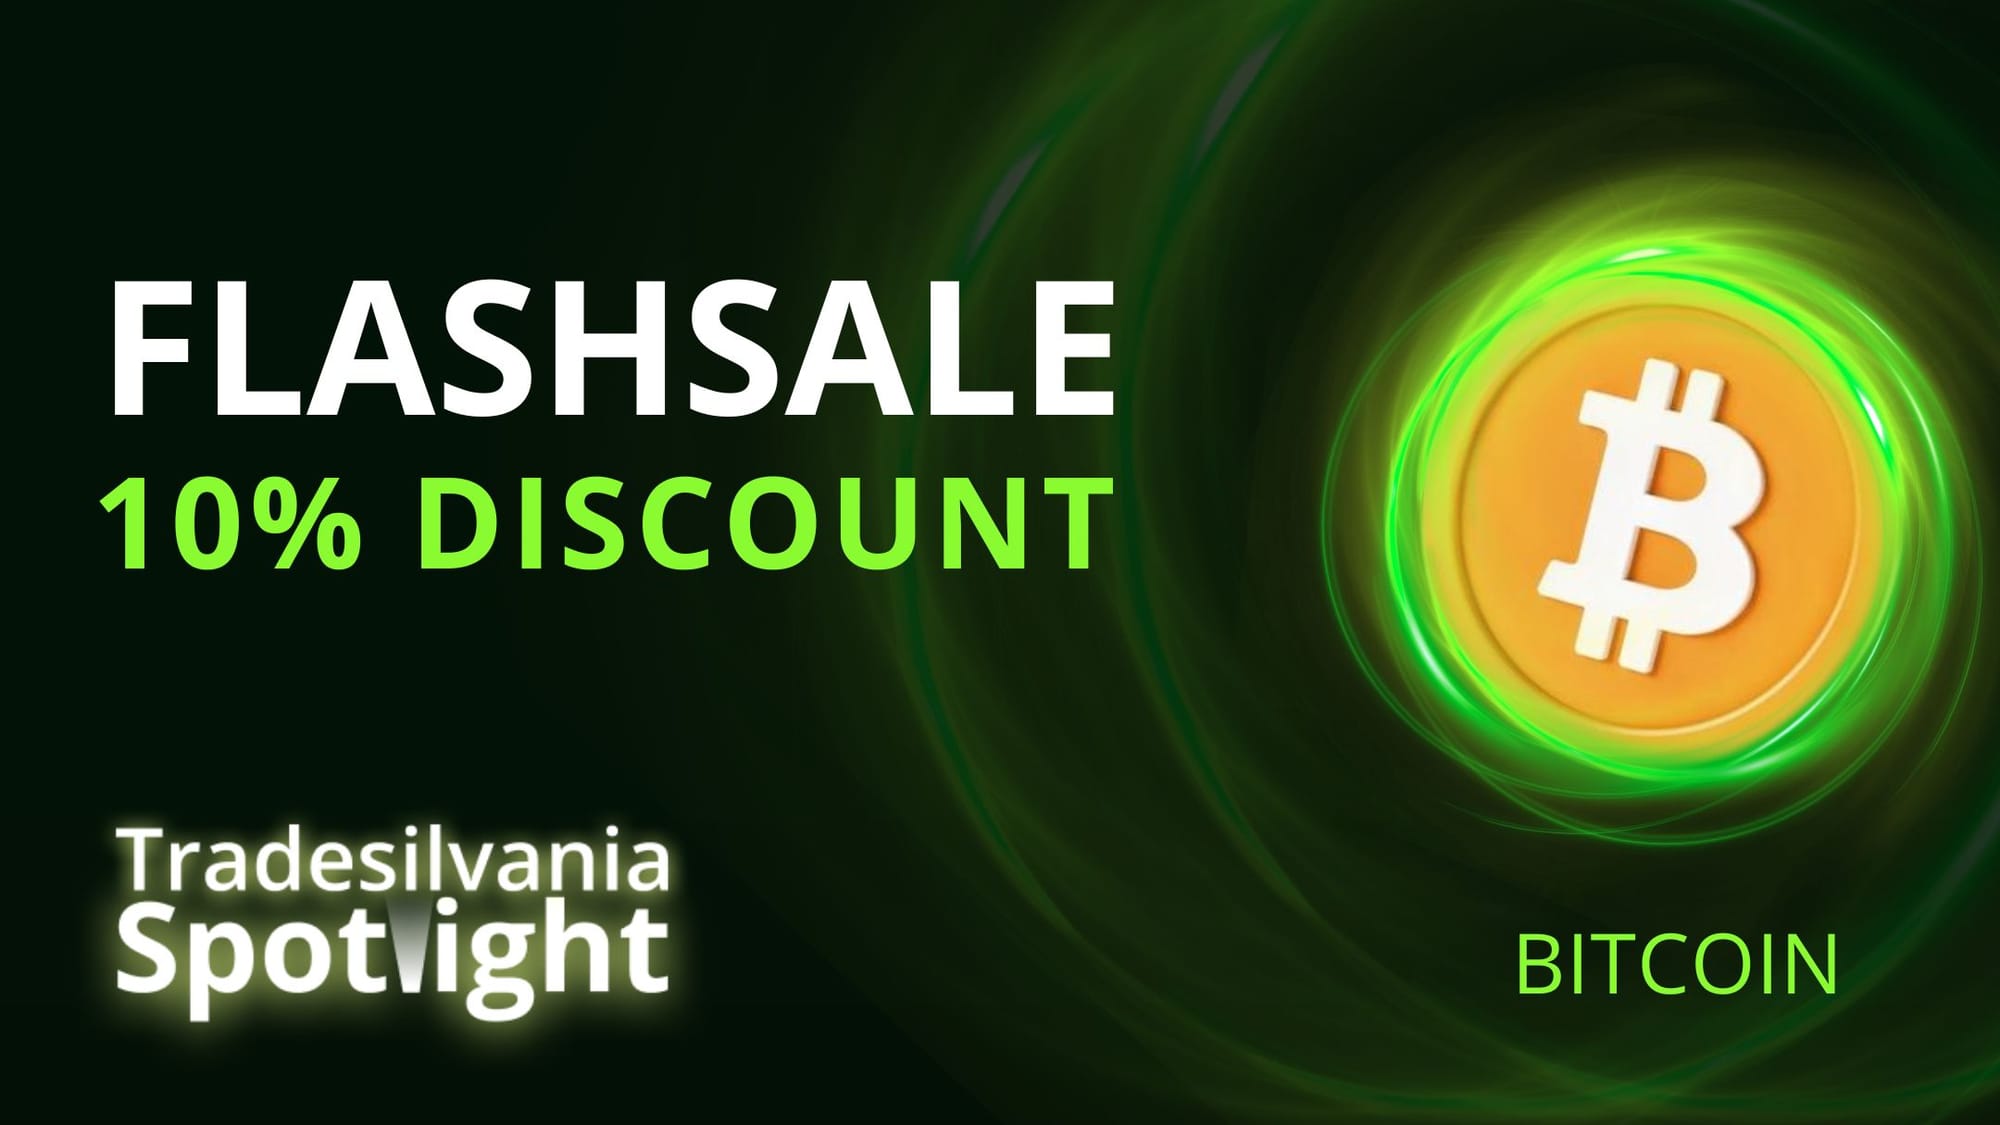 Cumpara BTC cu discount de 10% prin Tradesilvania Spotlight FlashSale